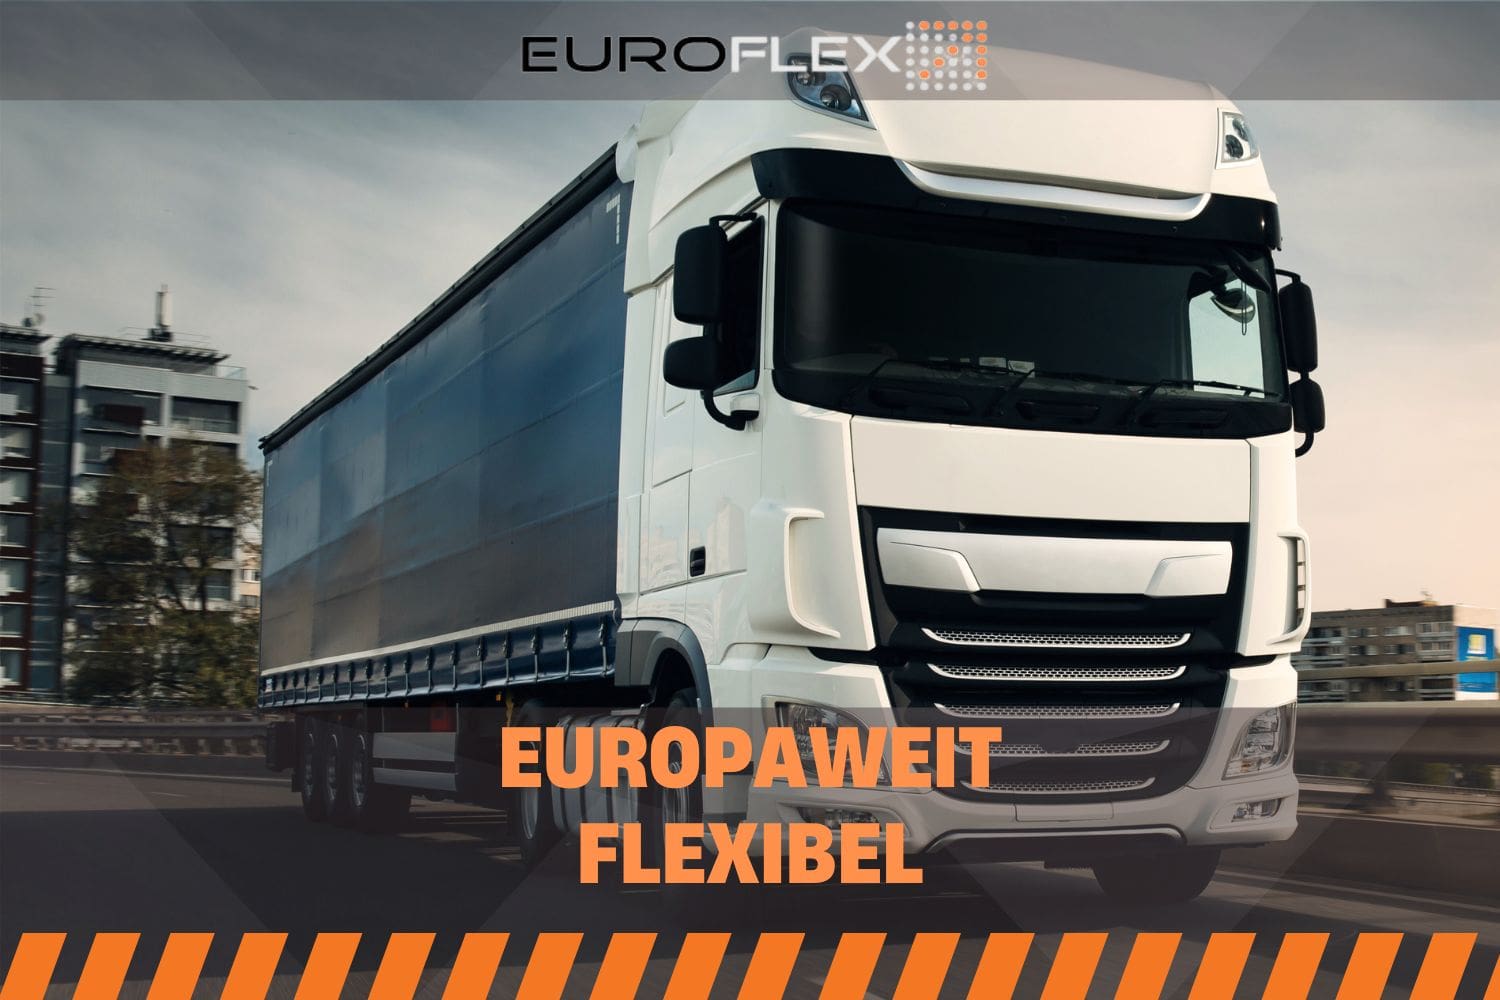 Euroflex steht für europaweit flexibel. Dieser Text ist auch auf dem Bild zu sehen. Im Hintergrund steht ein Weißer LKW auf einem Industriegebiet.